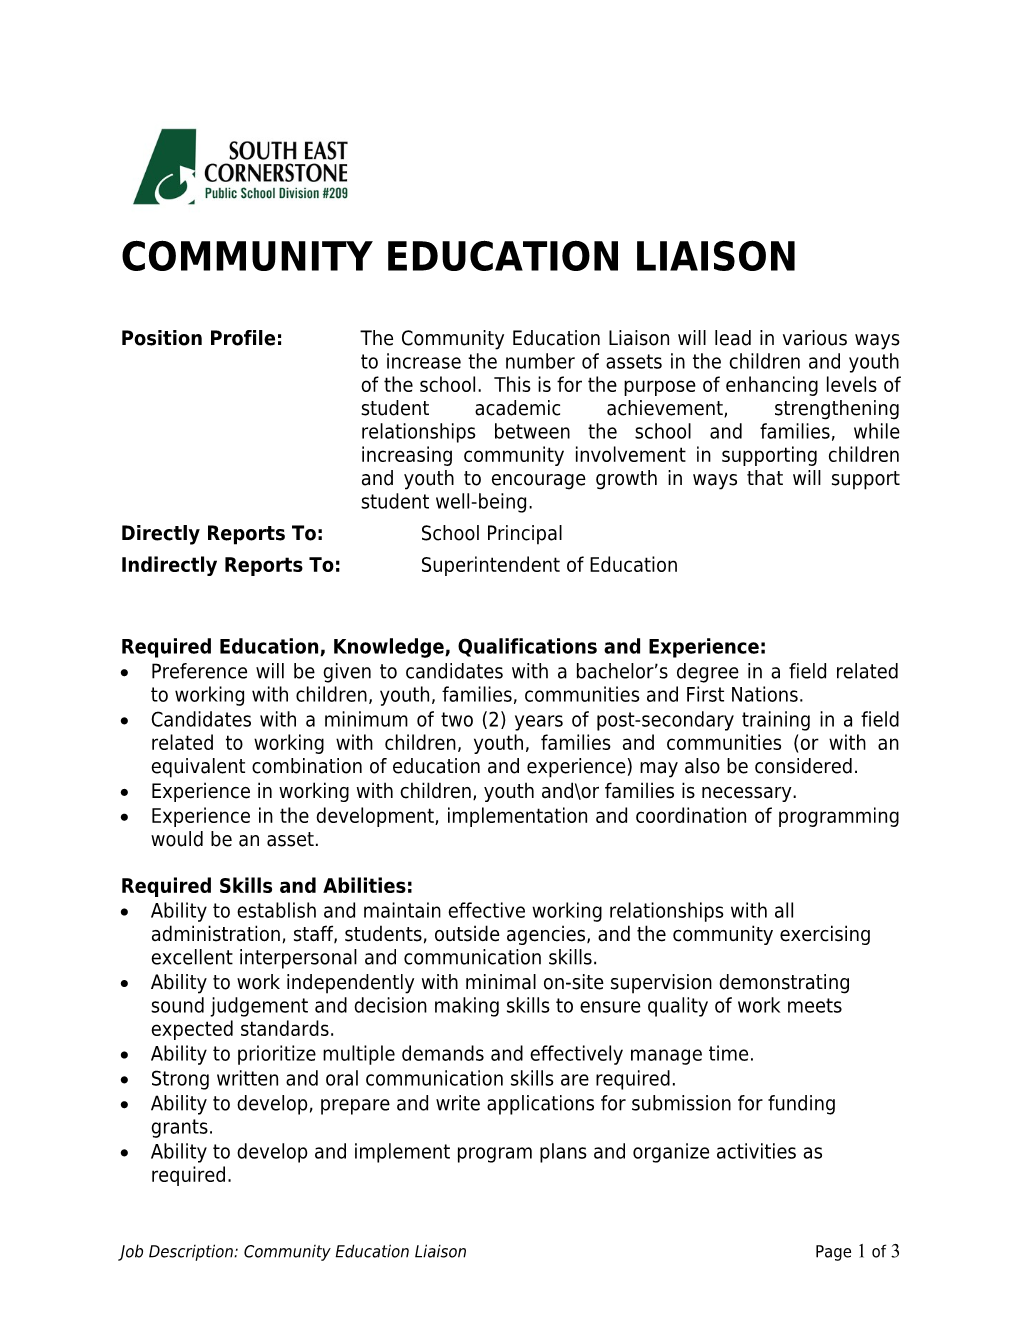 Community Education Liaison